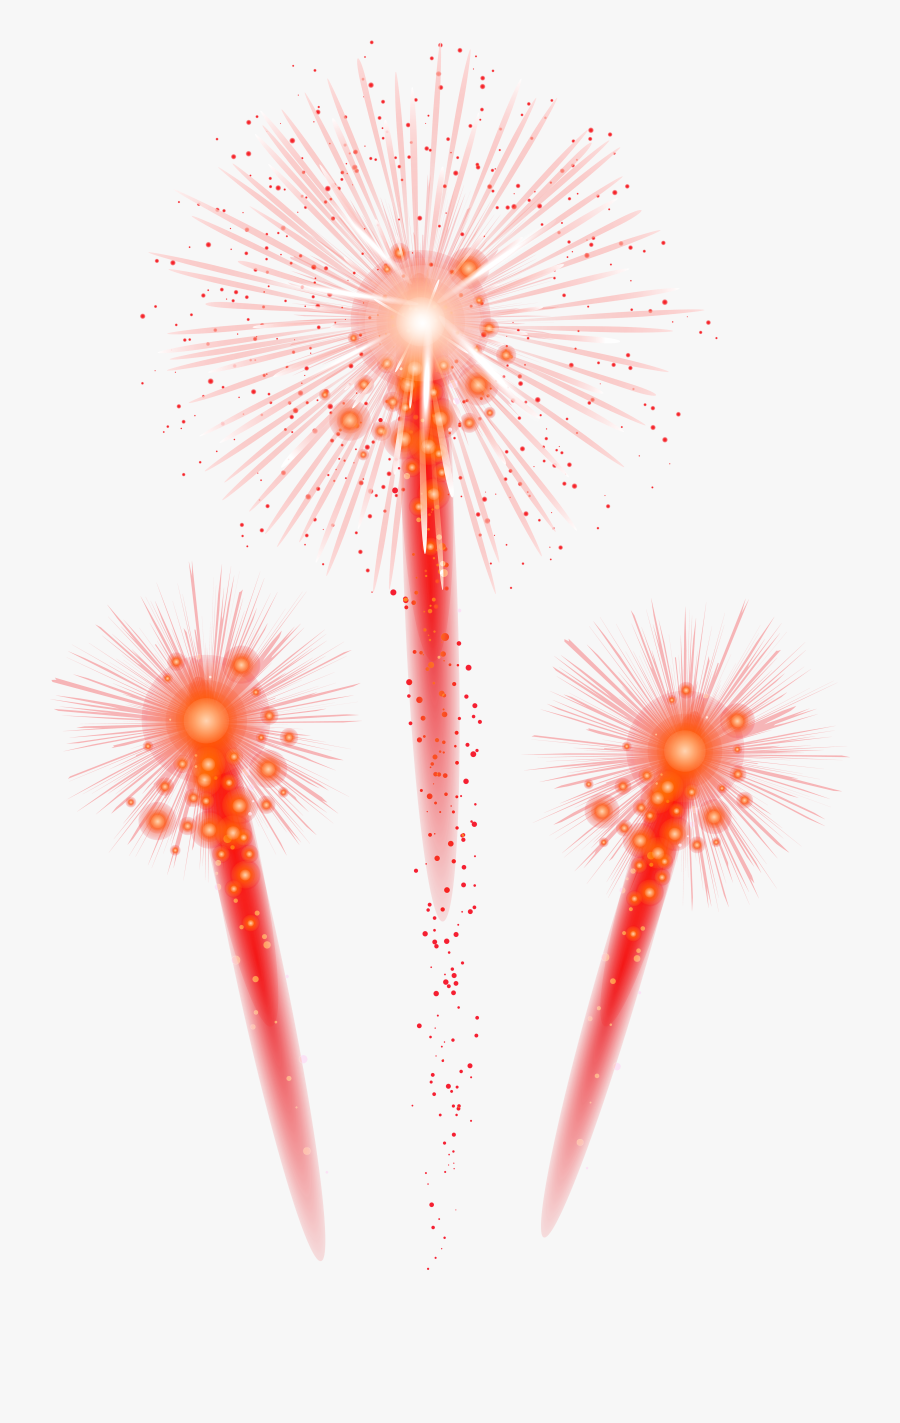 Fireworks Clip Art Png - Transparent Background Firework Png File, Transparent Clipart